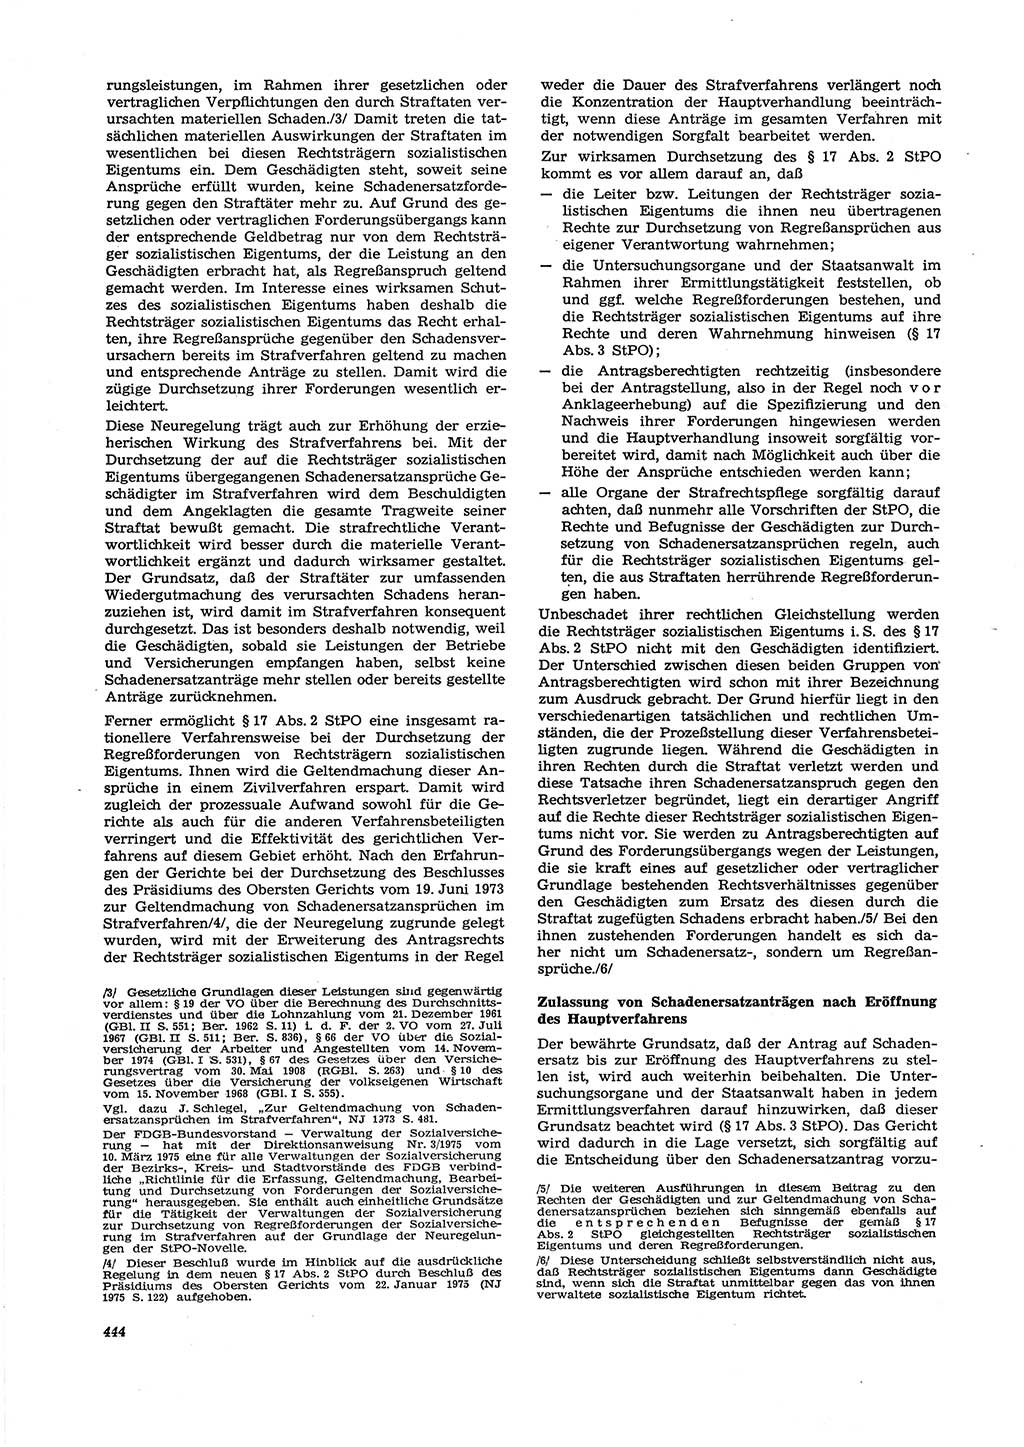 Neue Justiz (NJ), Zeitschrift für Recht und Rechtswissenschaft [Deutsche Demokratische Republik (DDR)], 29. Jahrgang 1975, Seite 444 (NJ DDR 1975, S. 444)